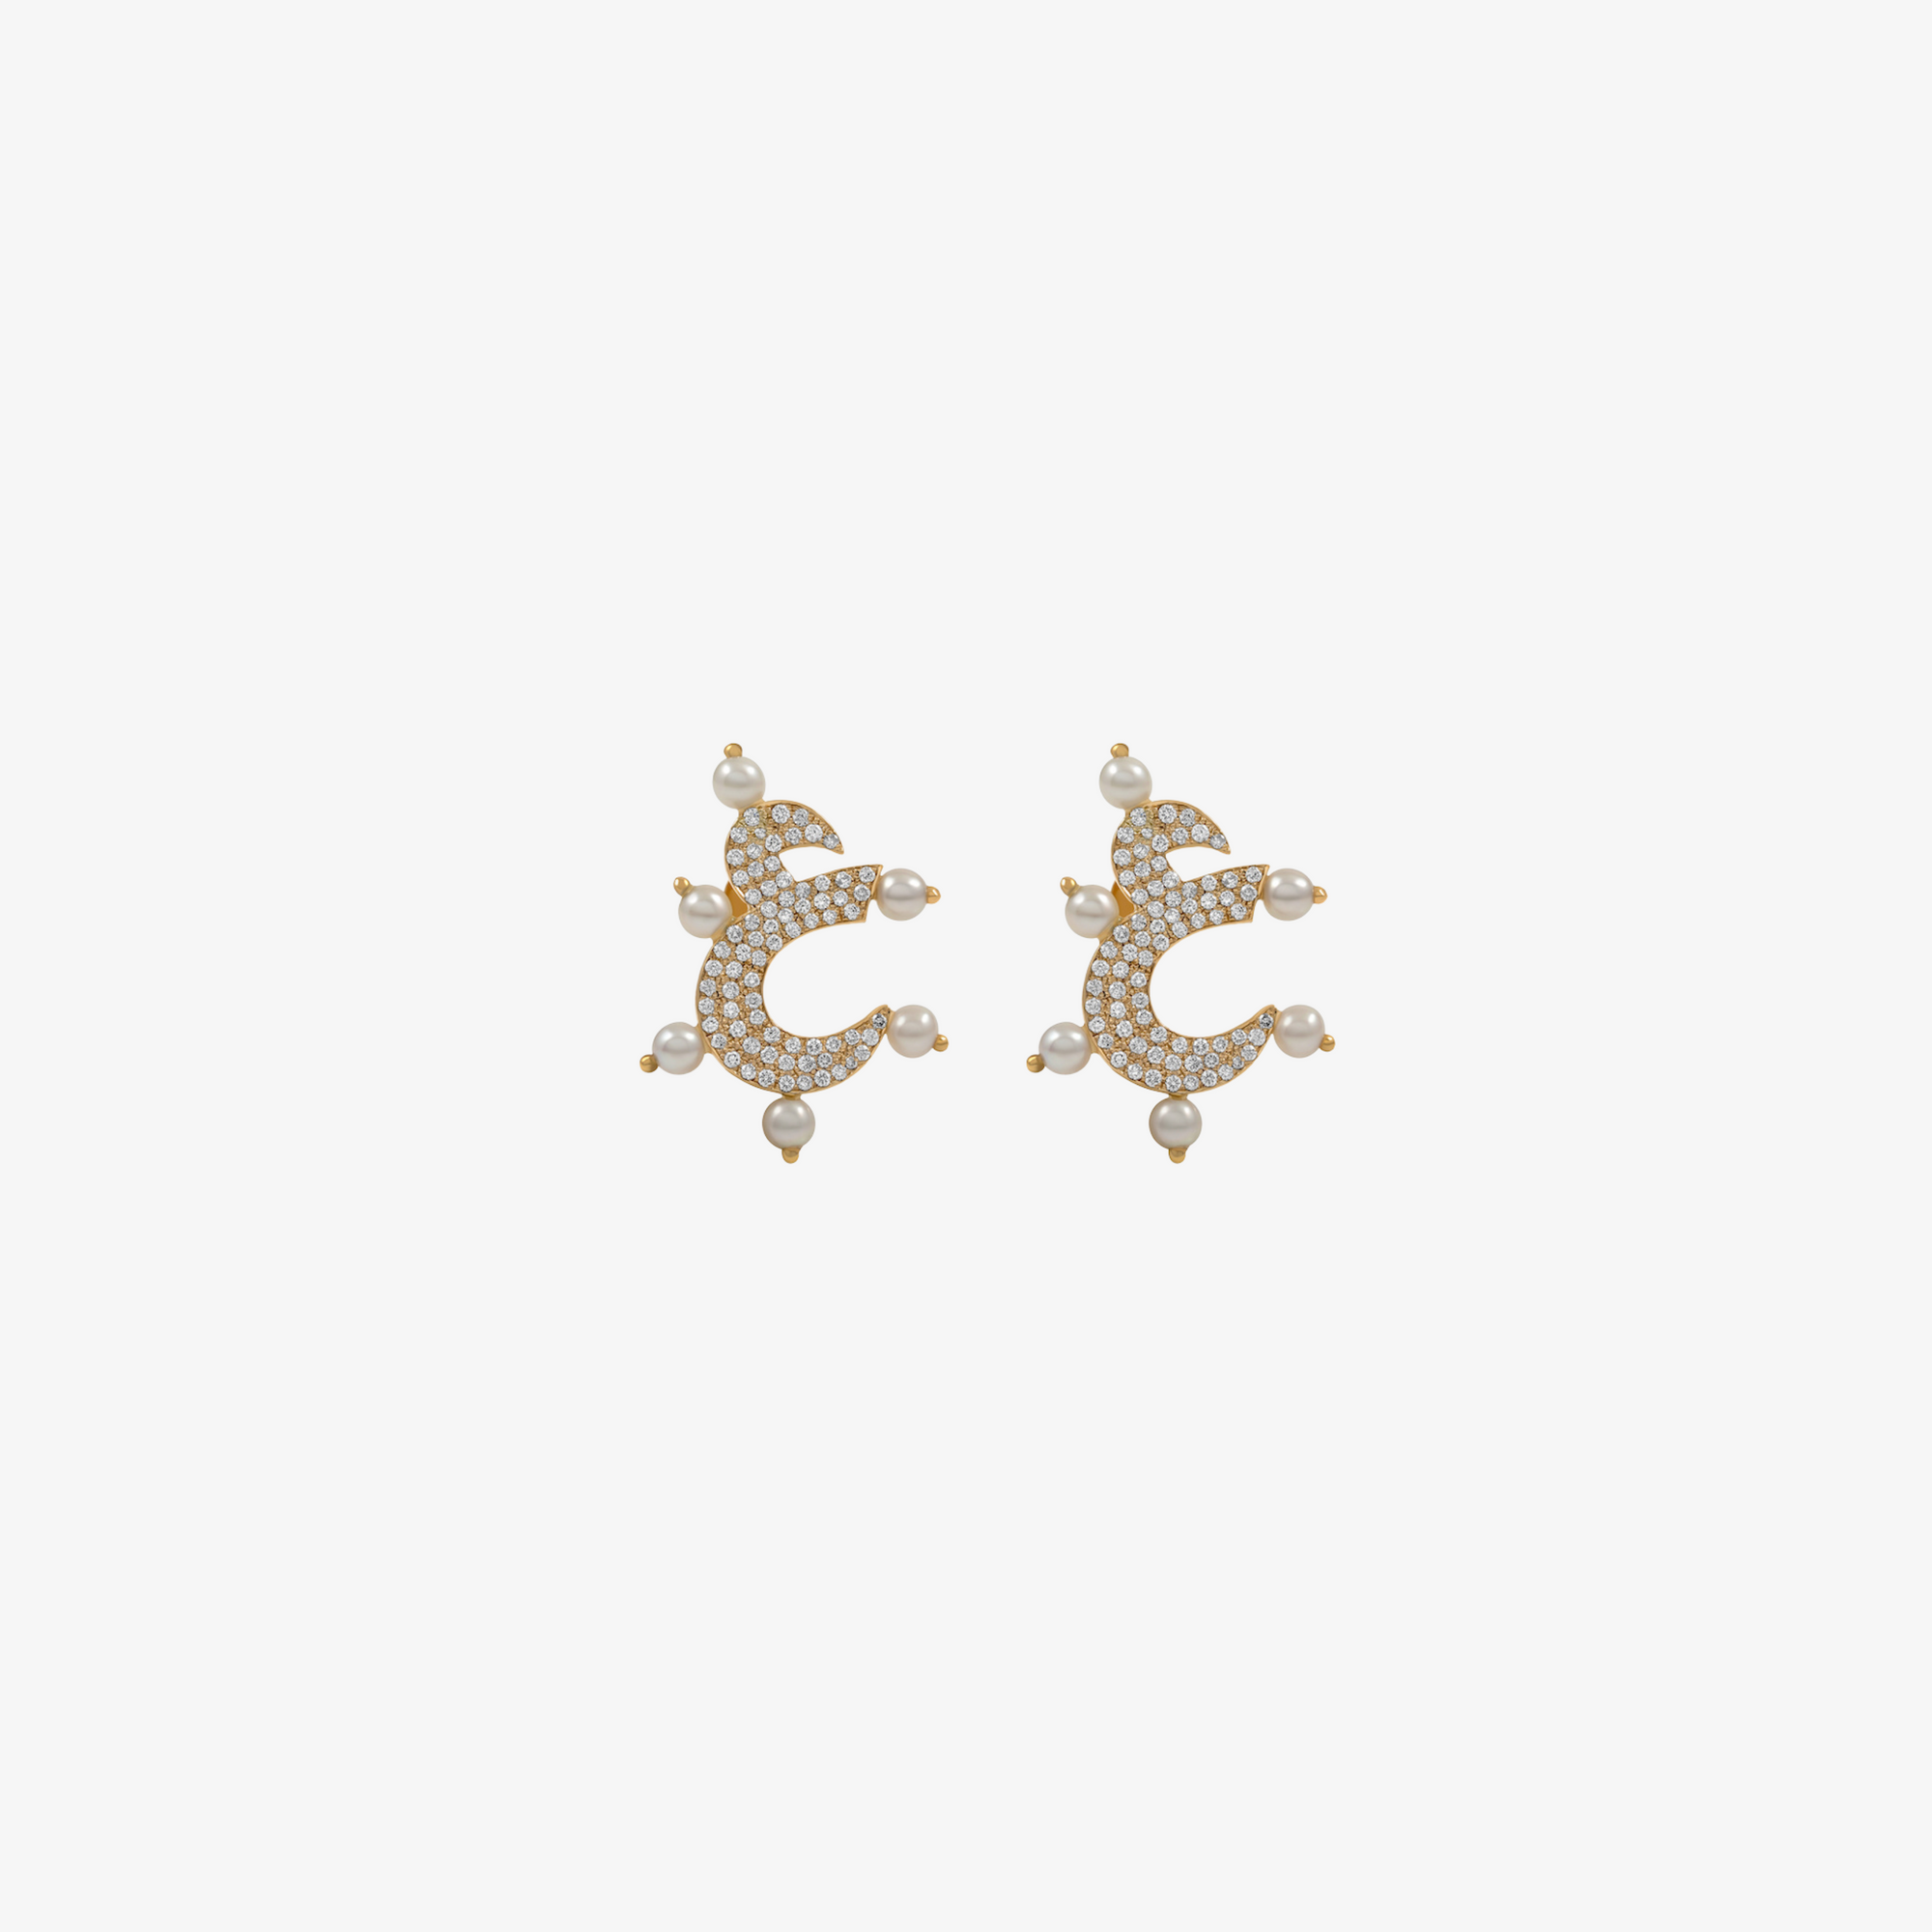 OULA- 18K Gold, Pearl & Diamond Letter Earrings